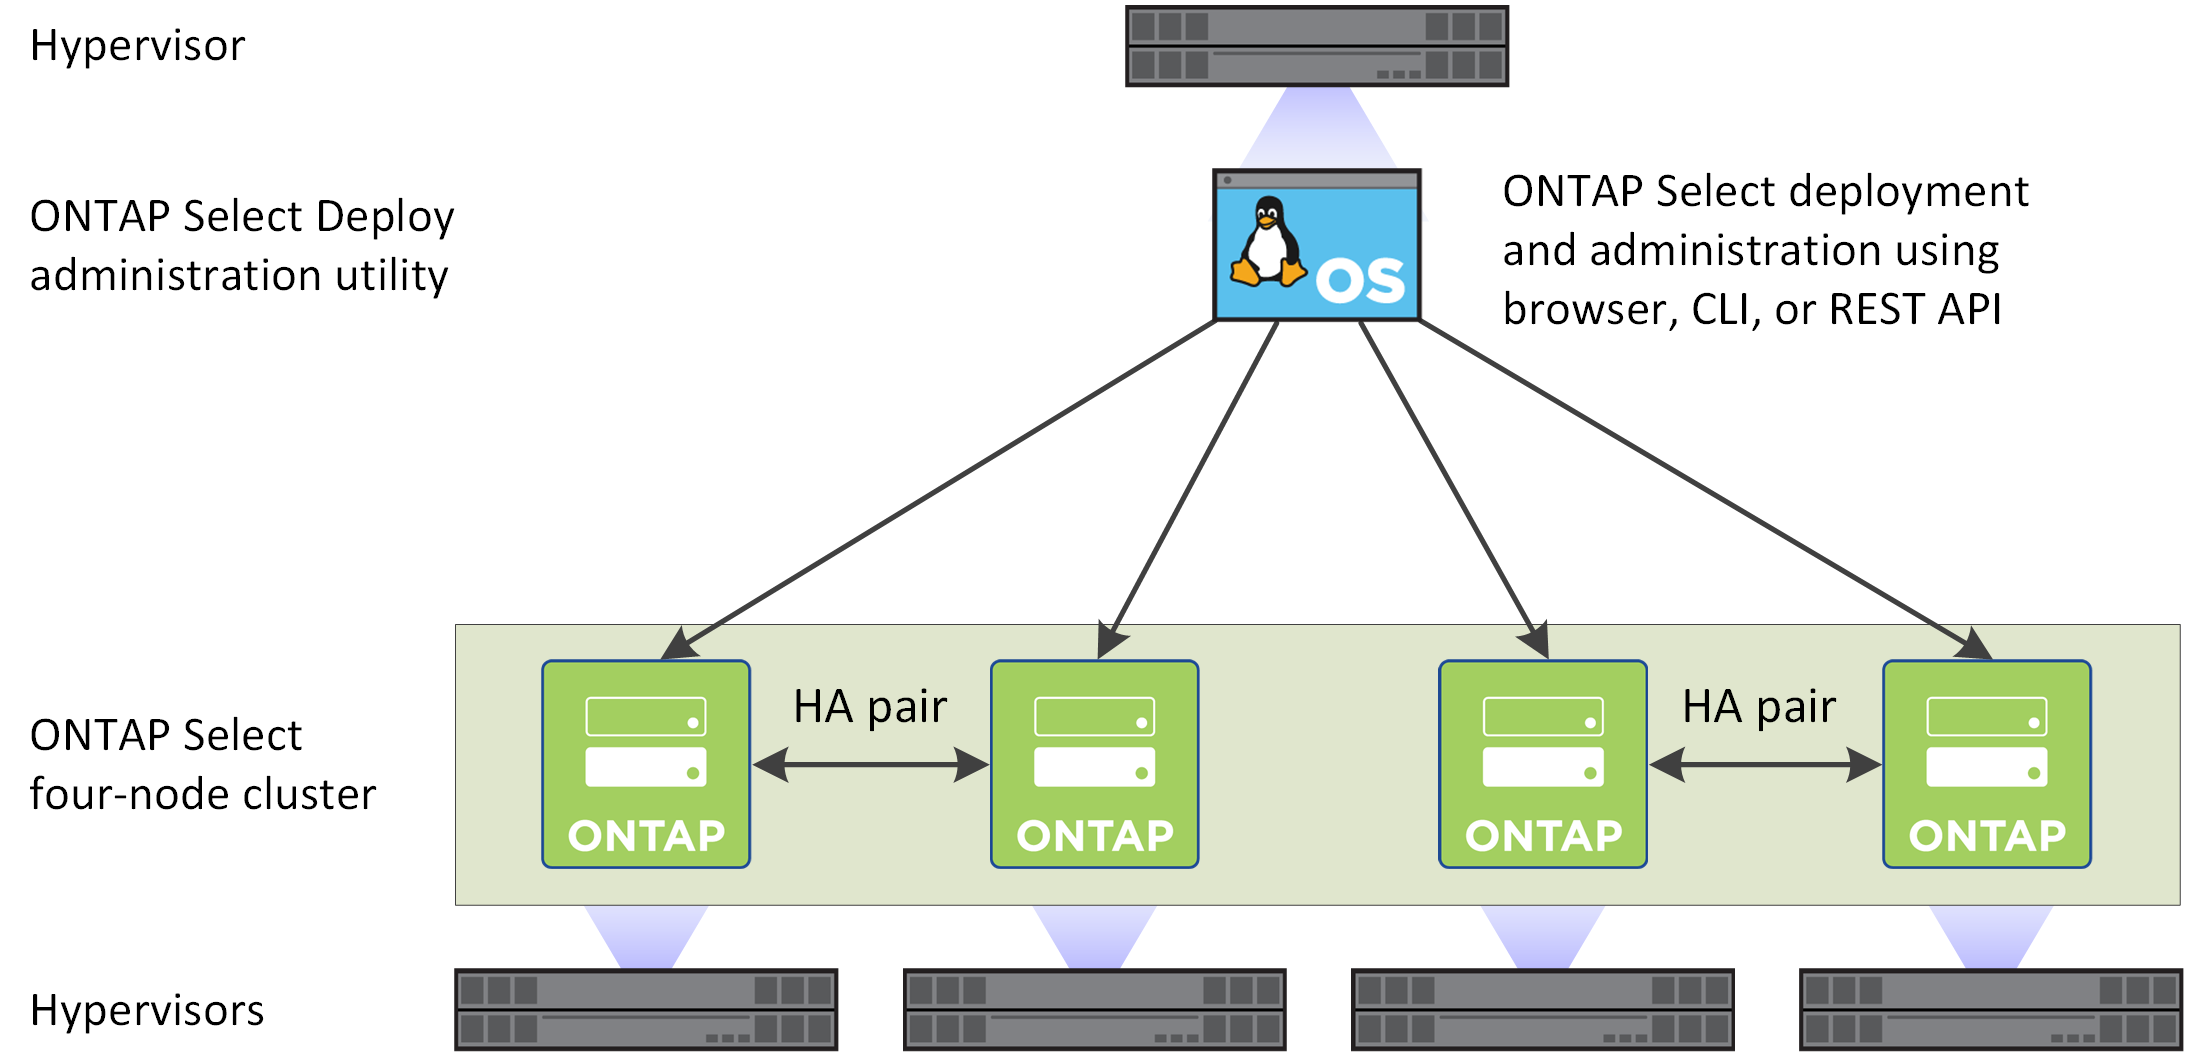 說明ONTAP Select 以部署管理公用程式建立的一個由四節點組成的叢集。